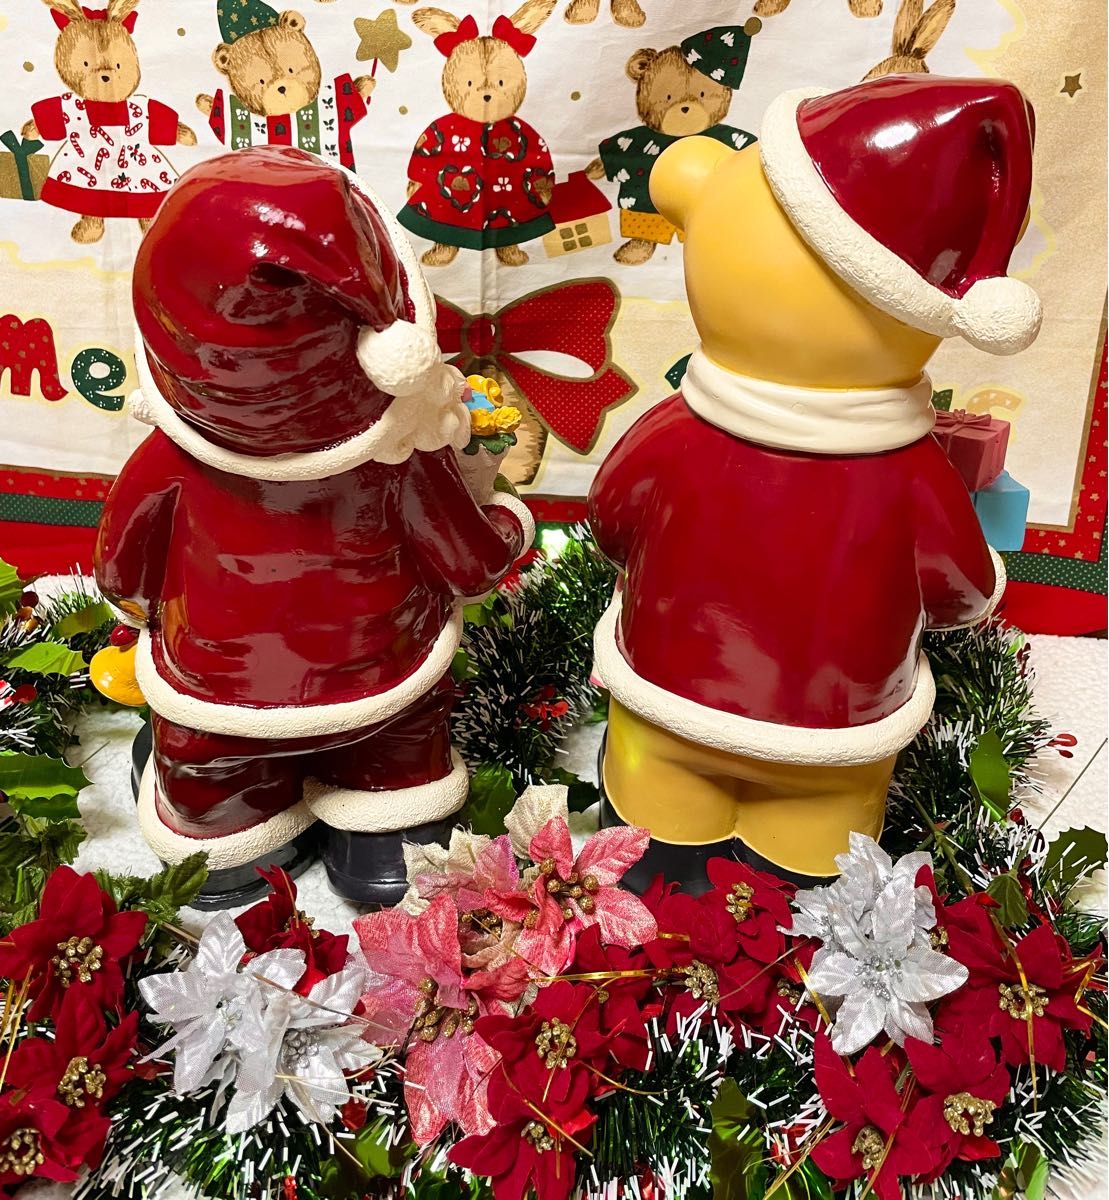 ②メリークリスマス オブジェ 置き物 サンタクローストナカイ 熊 飾り ツリー プレゼント スノーマン オーナメント グッズ 雑貨